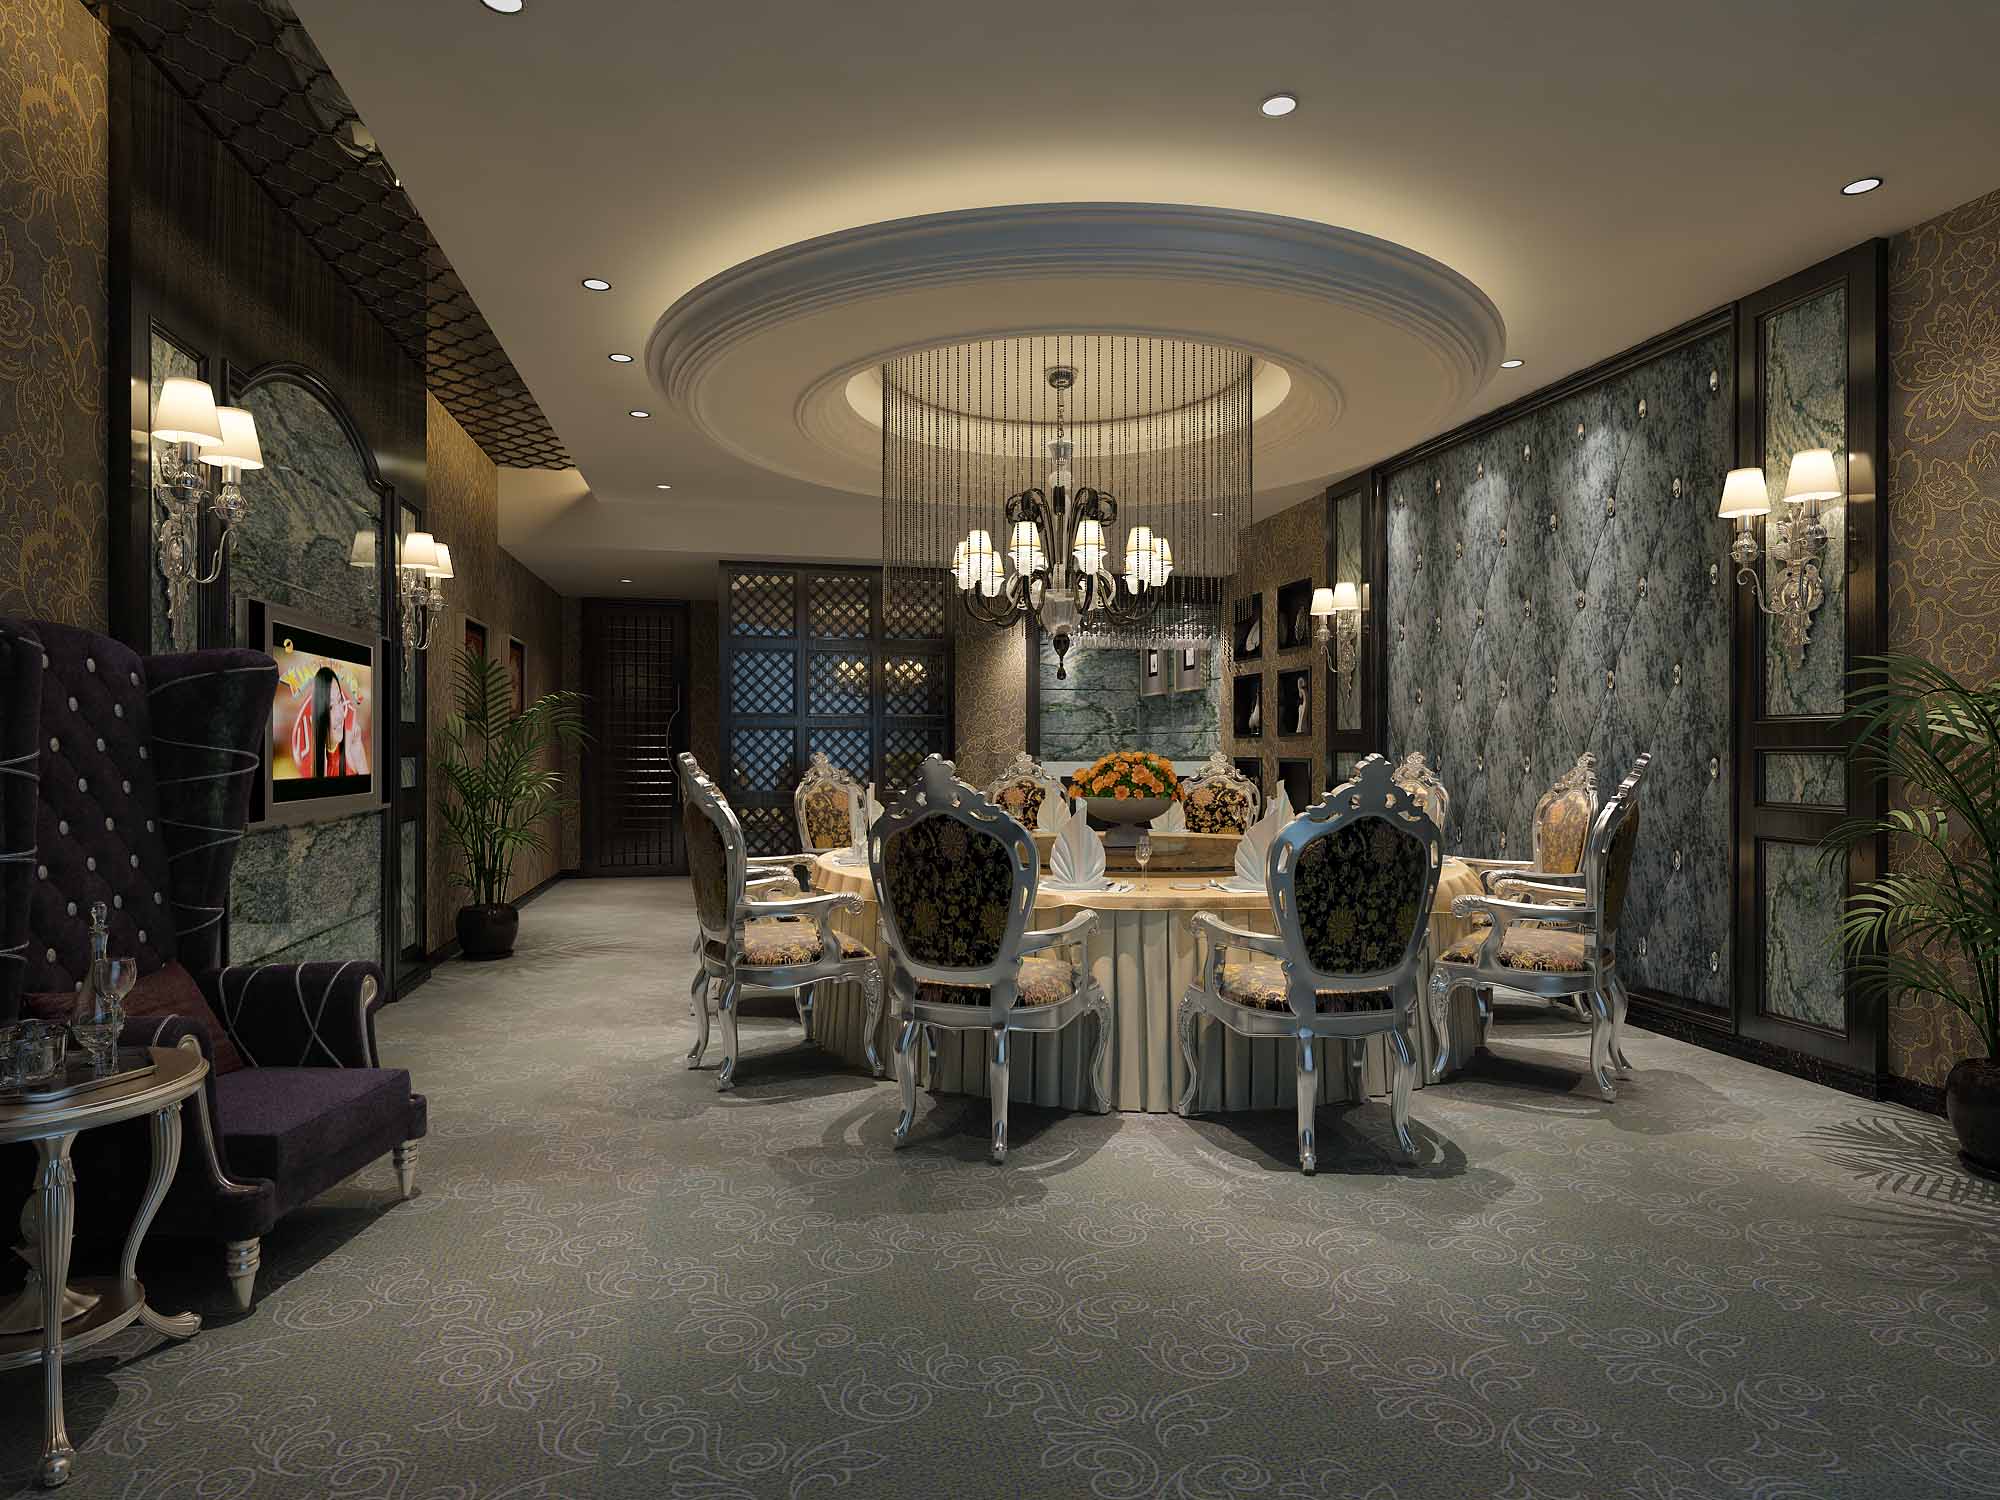 新中式茶餐厅 - 效果图交流区-建E室内设计网